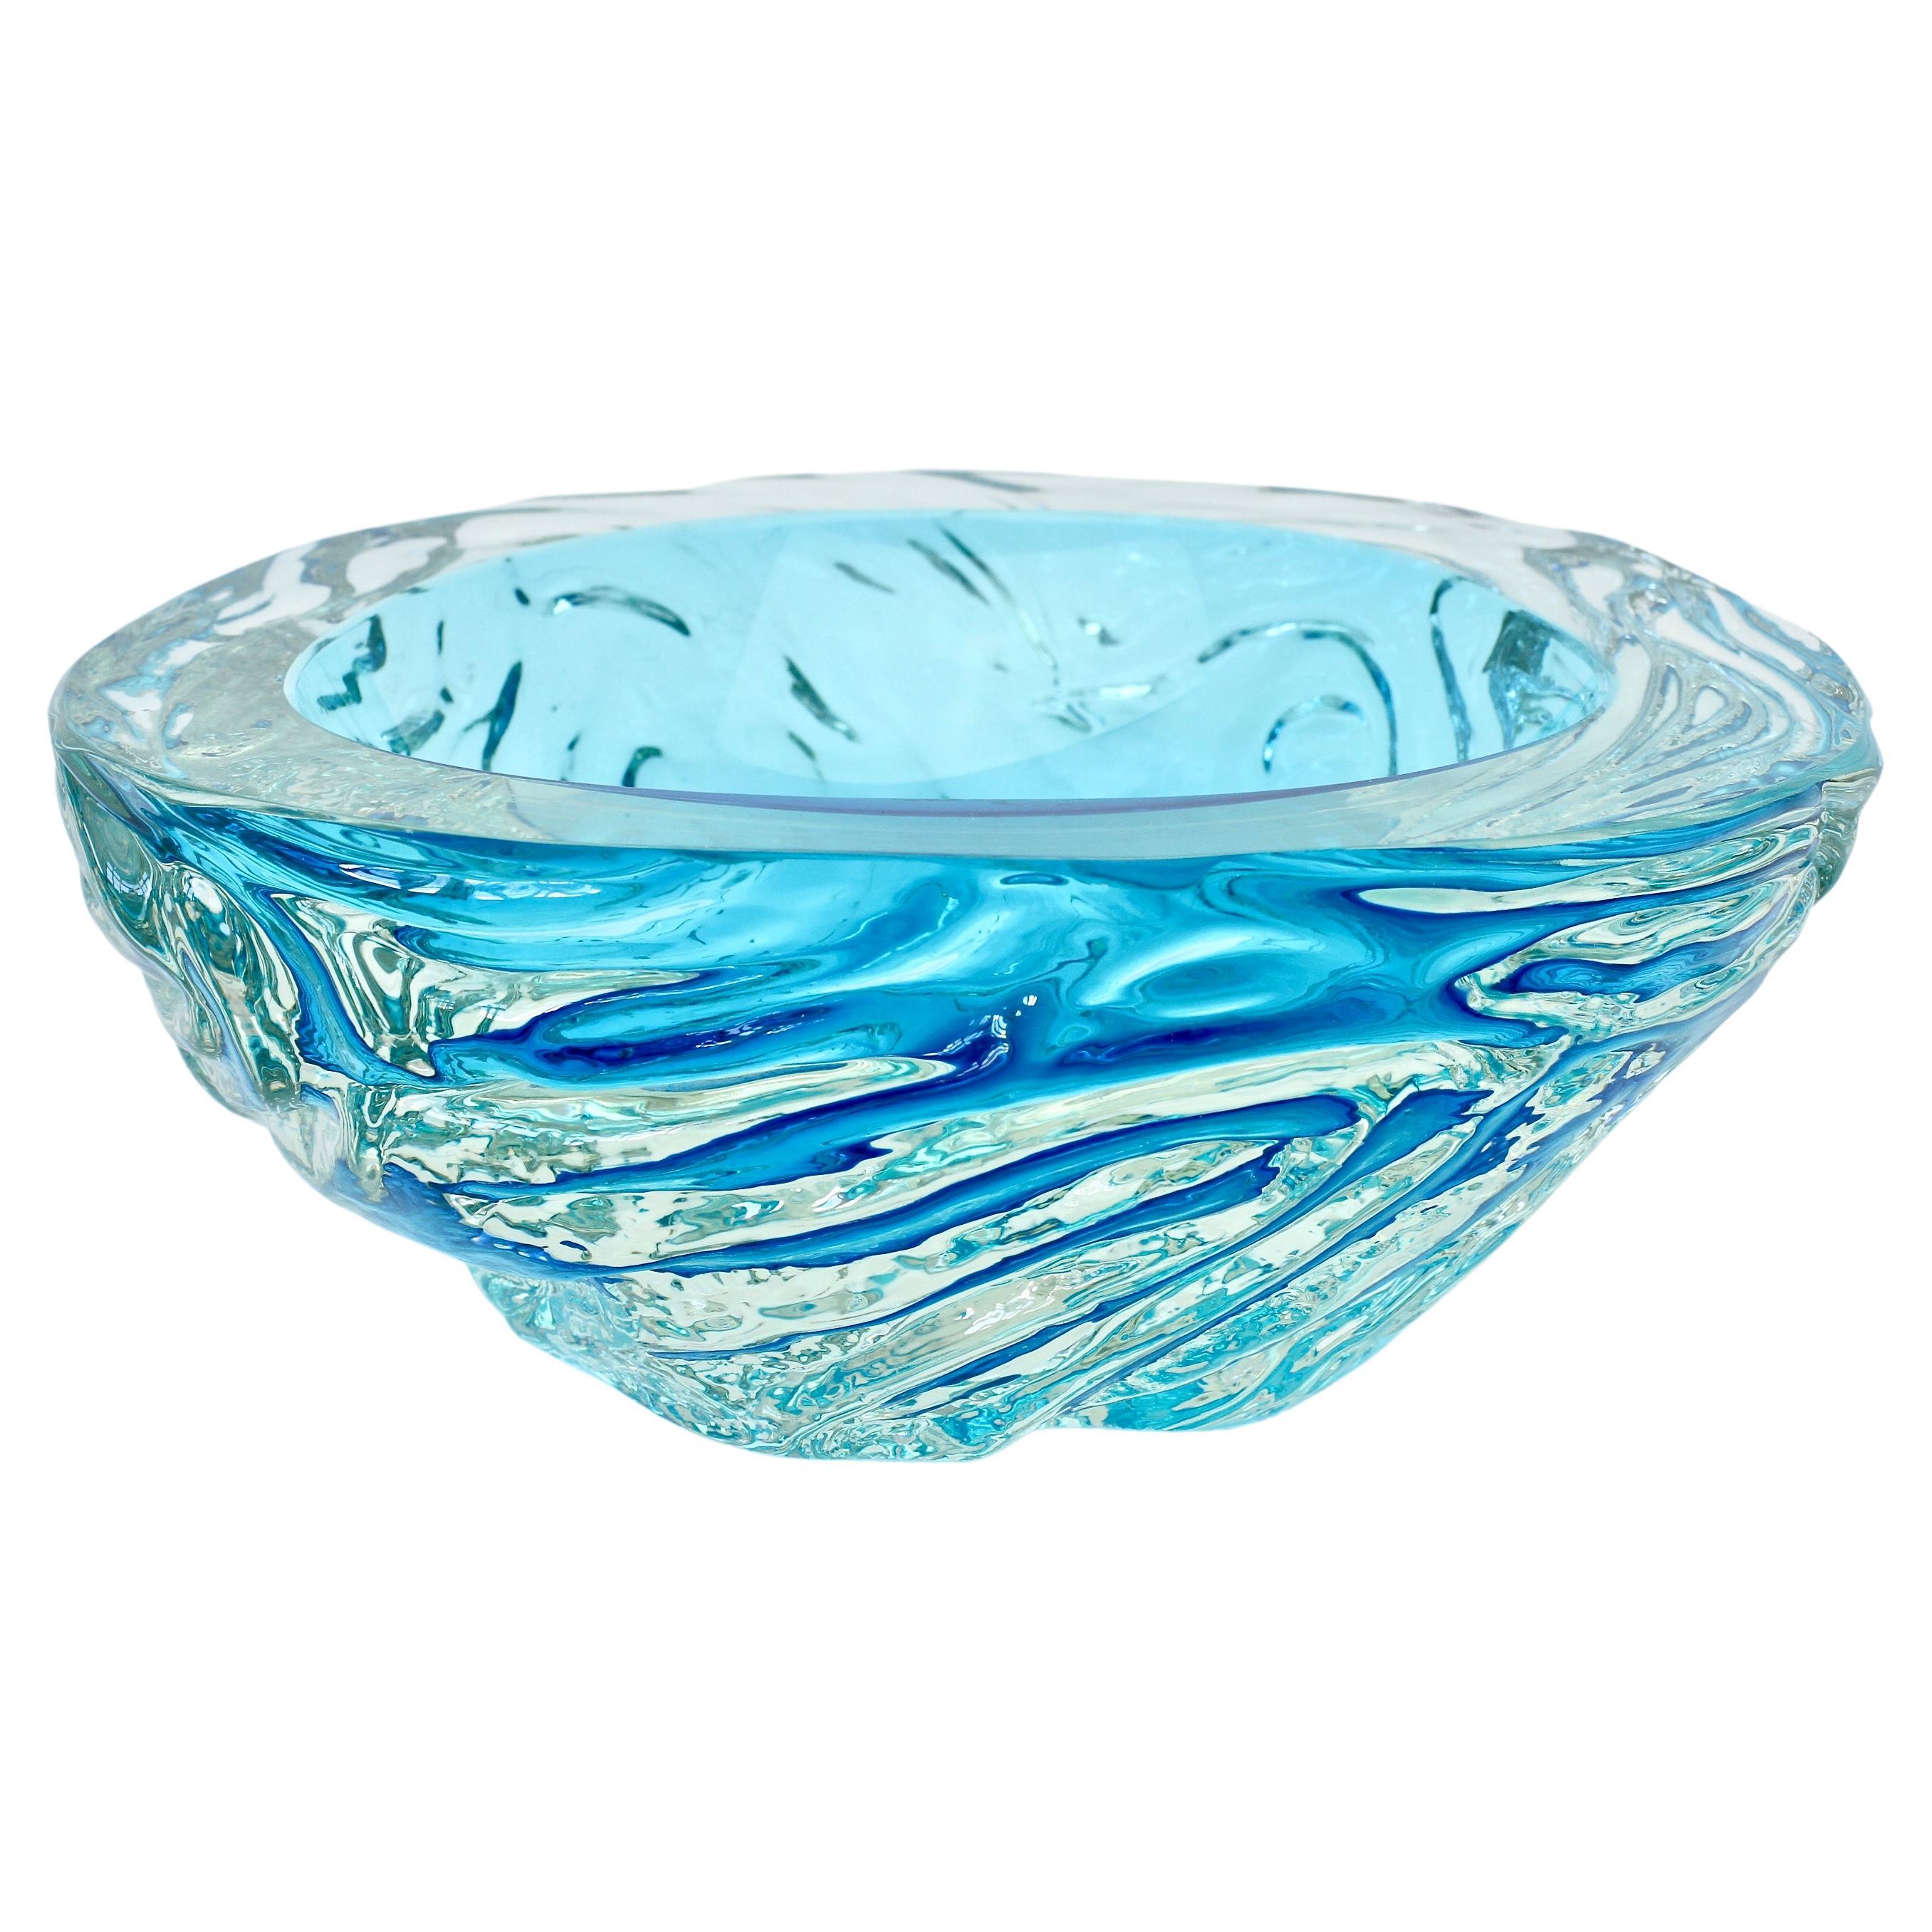 Midcentury Modern Große Schale aus blauem Murano Glass 'Sommerso', Seguso attri.